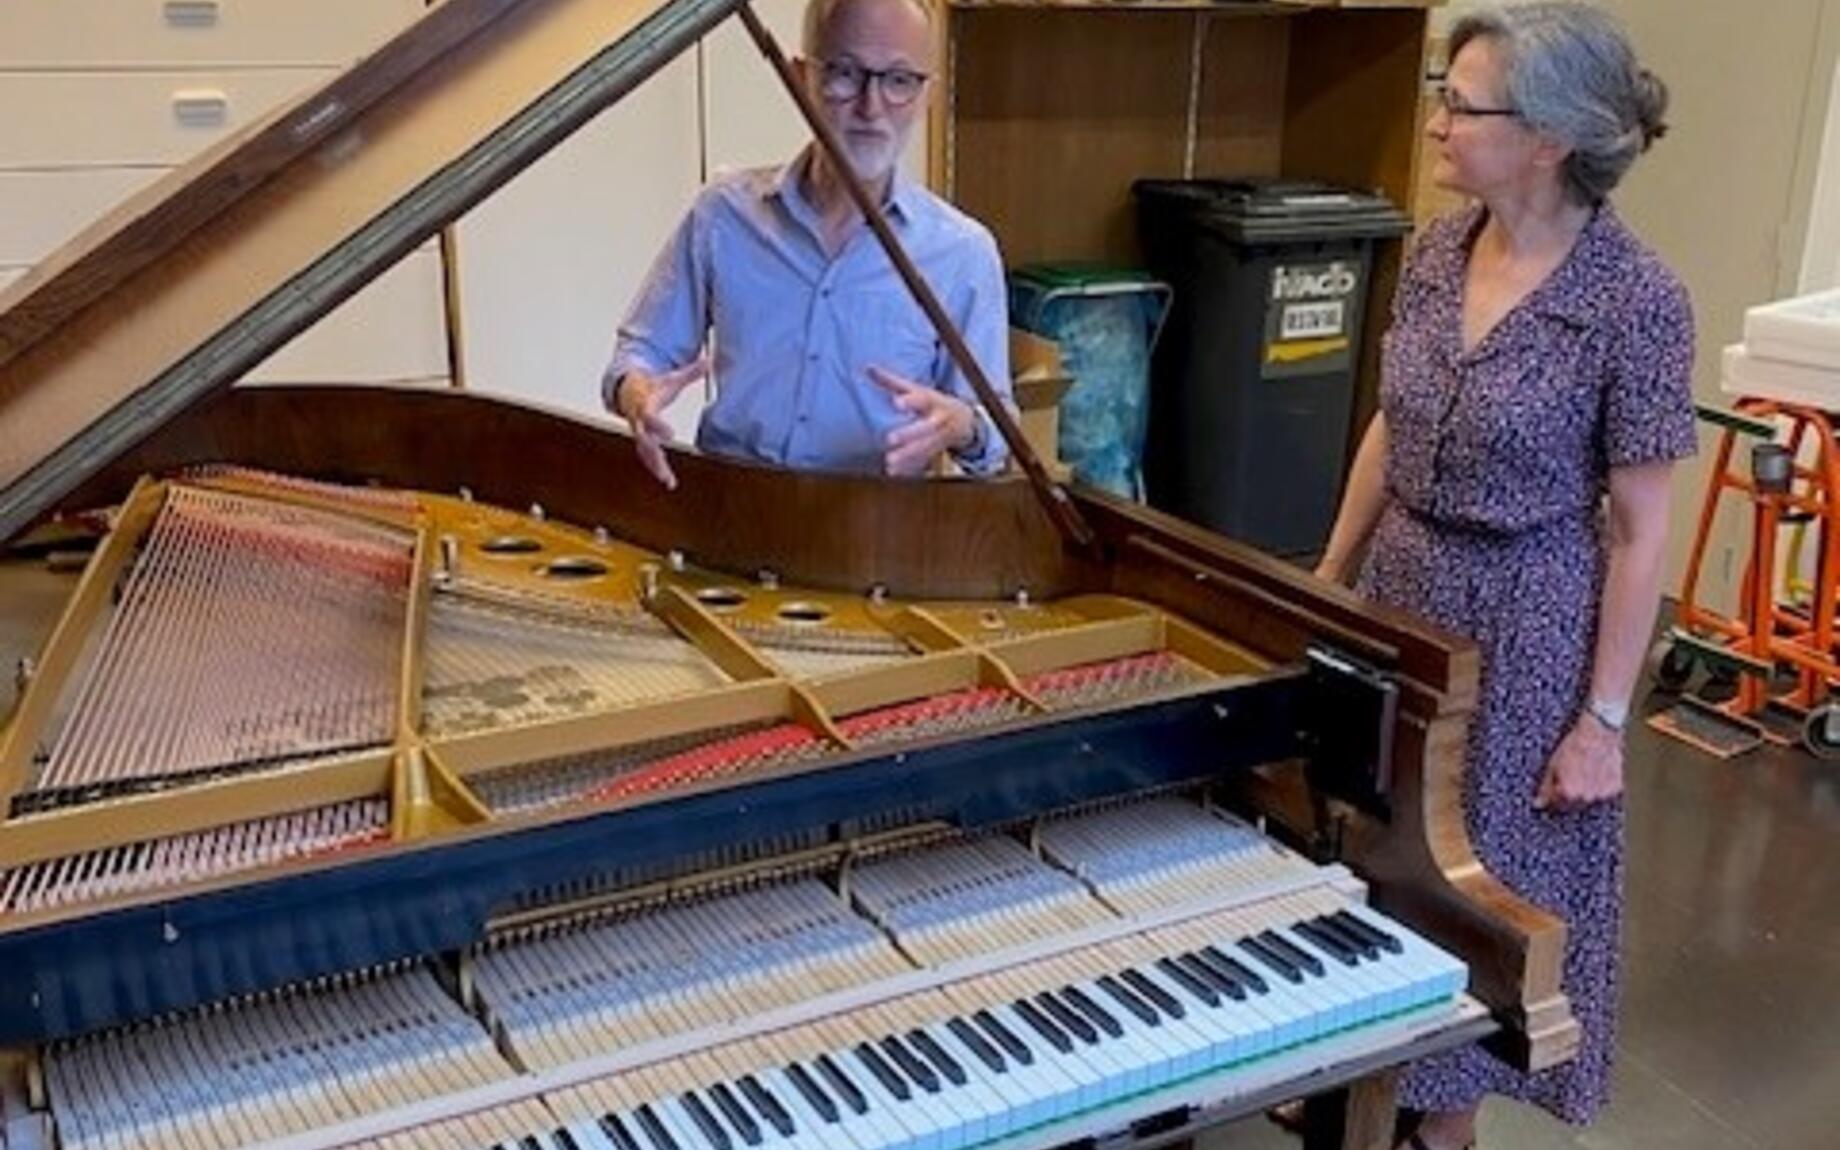 Jacek en Margareta deden beroep op de subsidie verfraaiing handelspanden voor de renovatie van hun pianowinkel